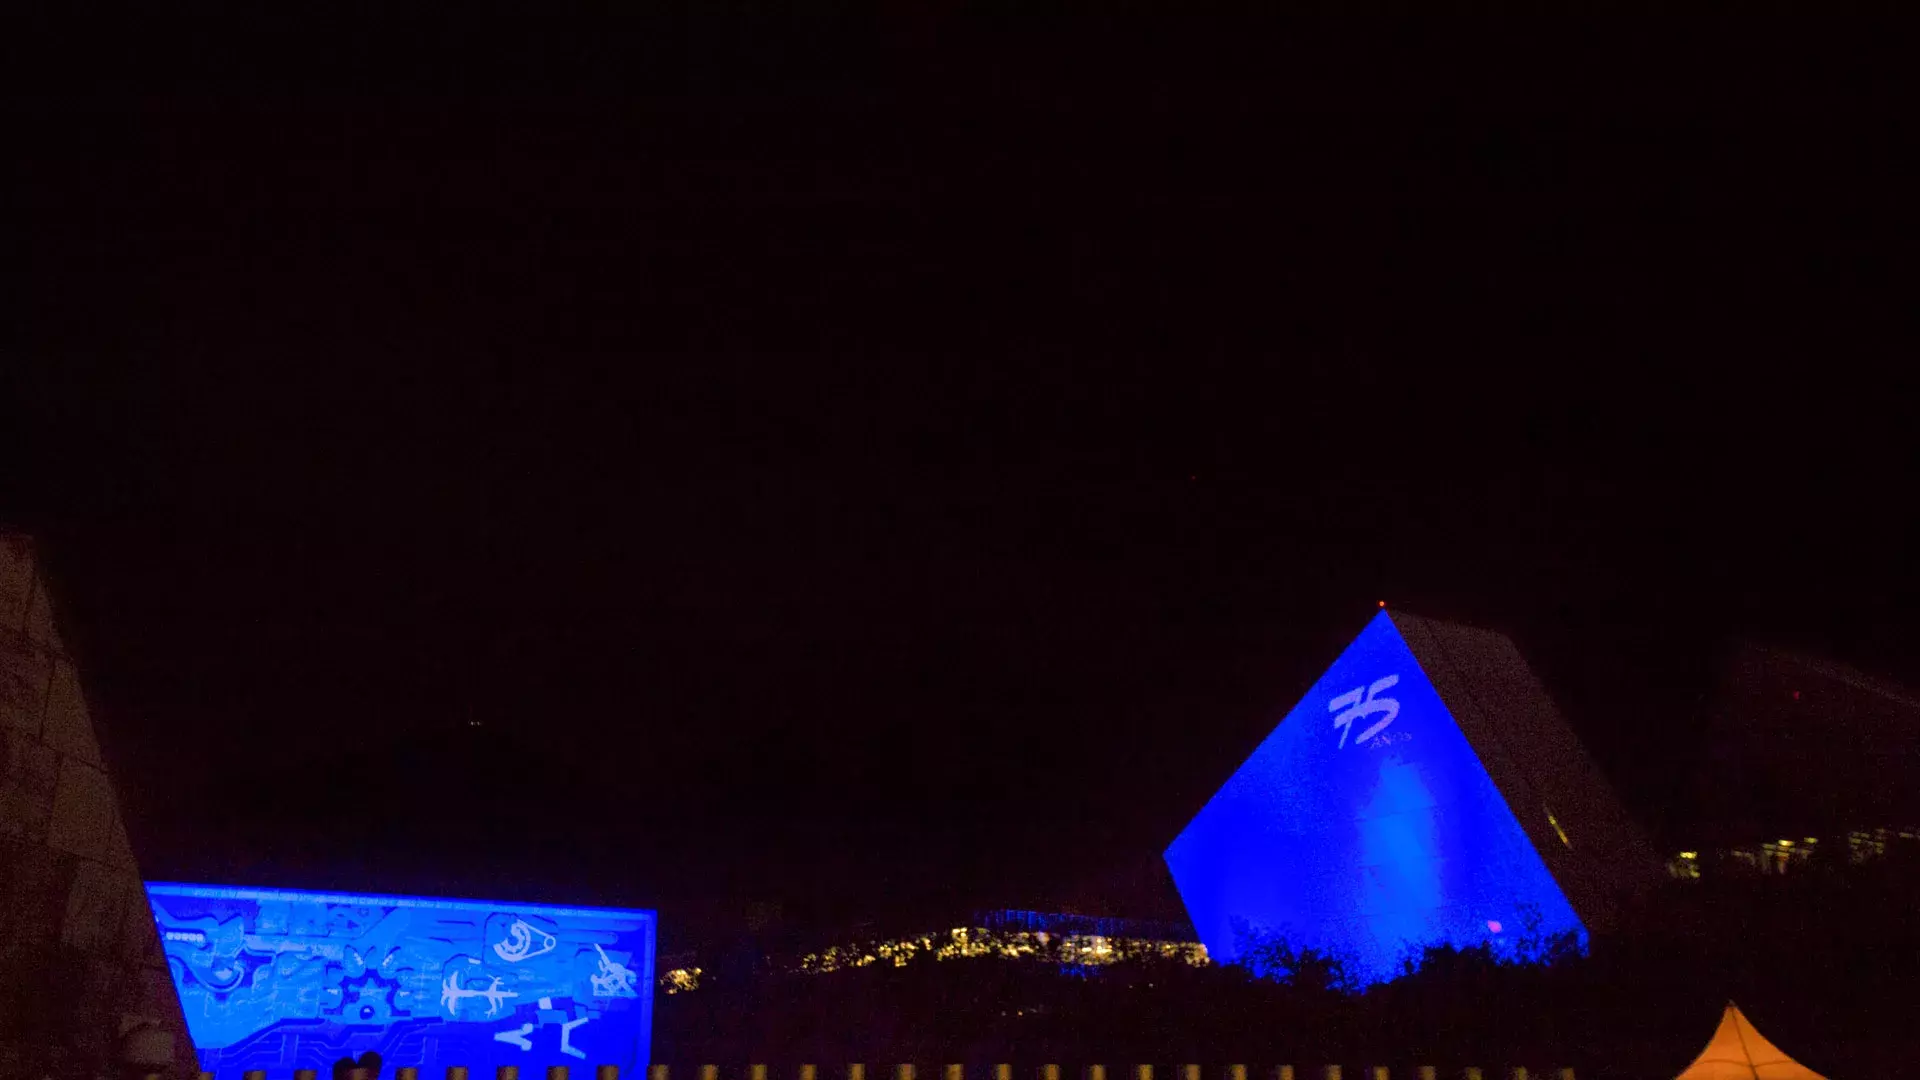 El Tec de Monterrey inició los festejos por su 75 aniversario con un espectáculo de luz azul en sus edificios más emblemáticos en el campus Monterrey.